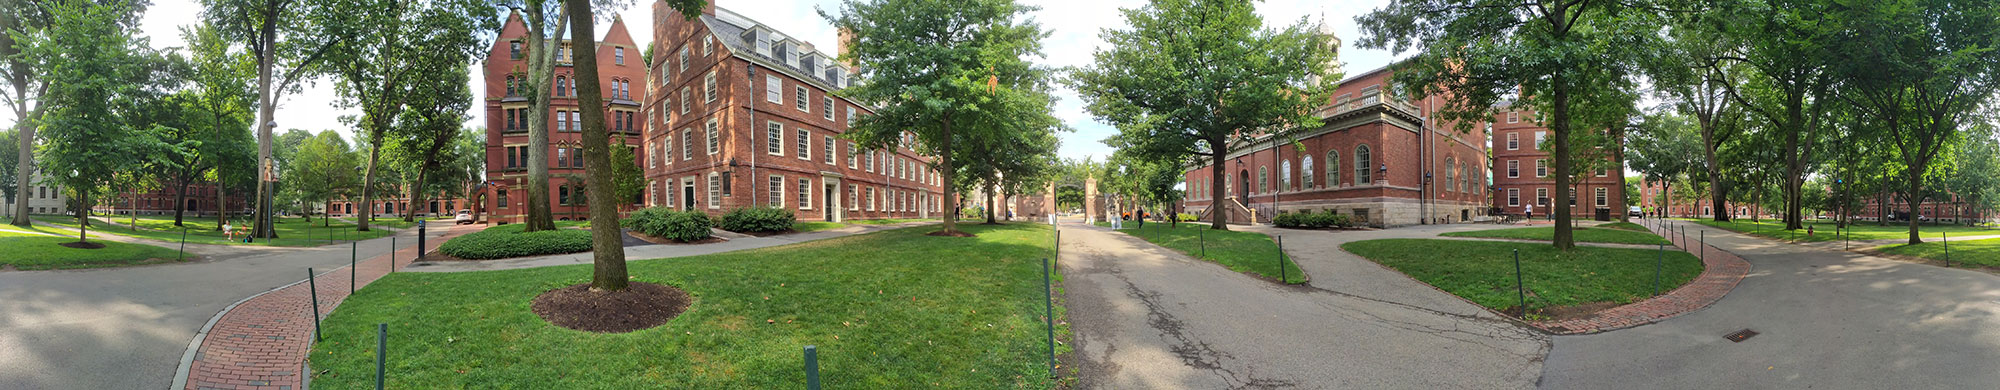 Campus di Harvard, Case di Harvard